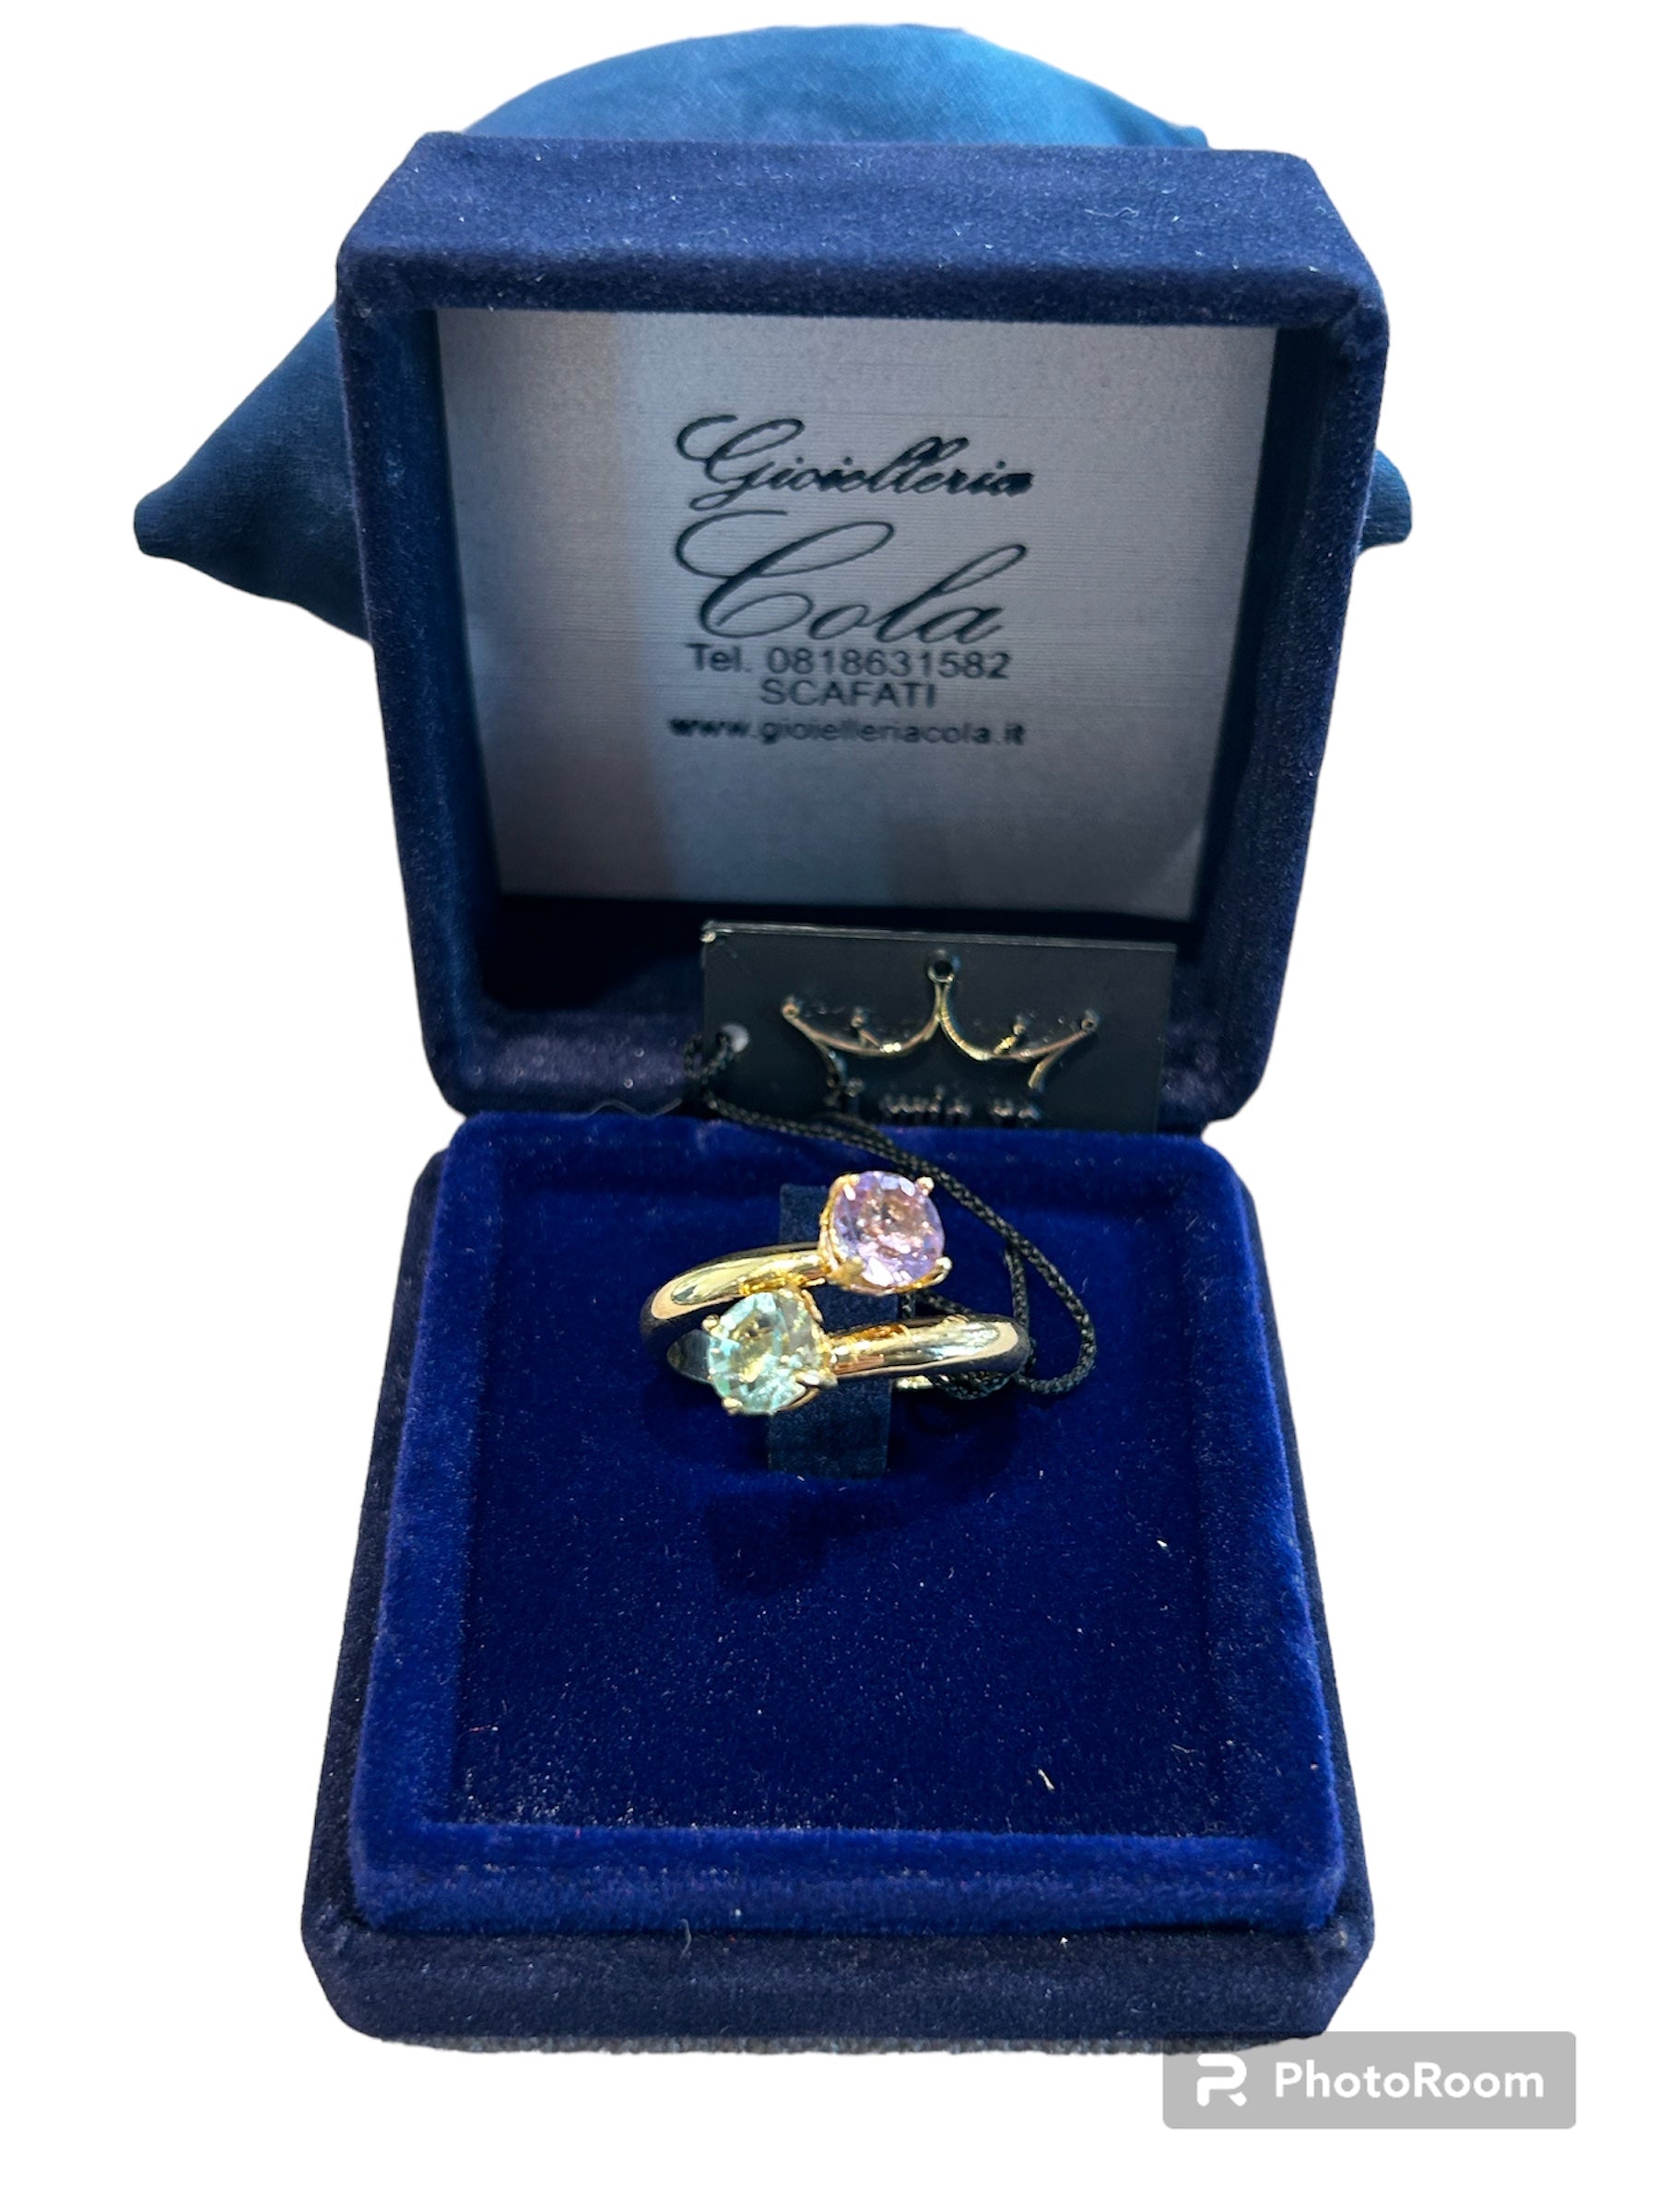 IL Mio Re - Contrariè ring with rose quartz in gilded bronze - ILMIORE AN 020